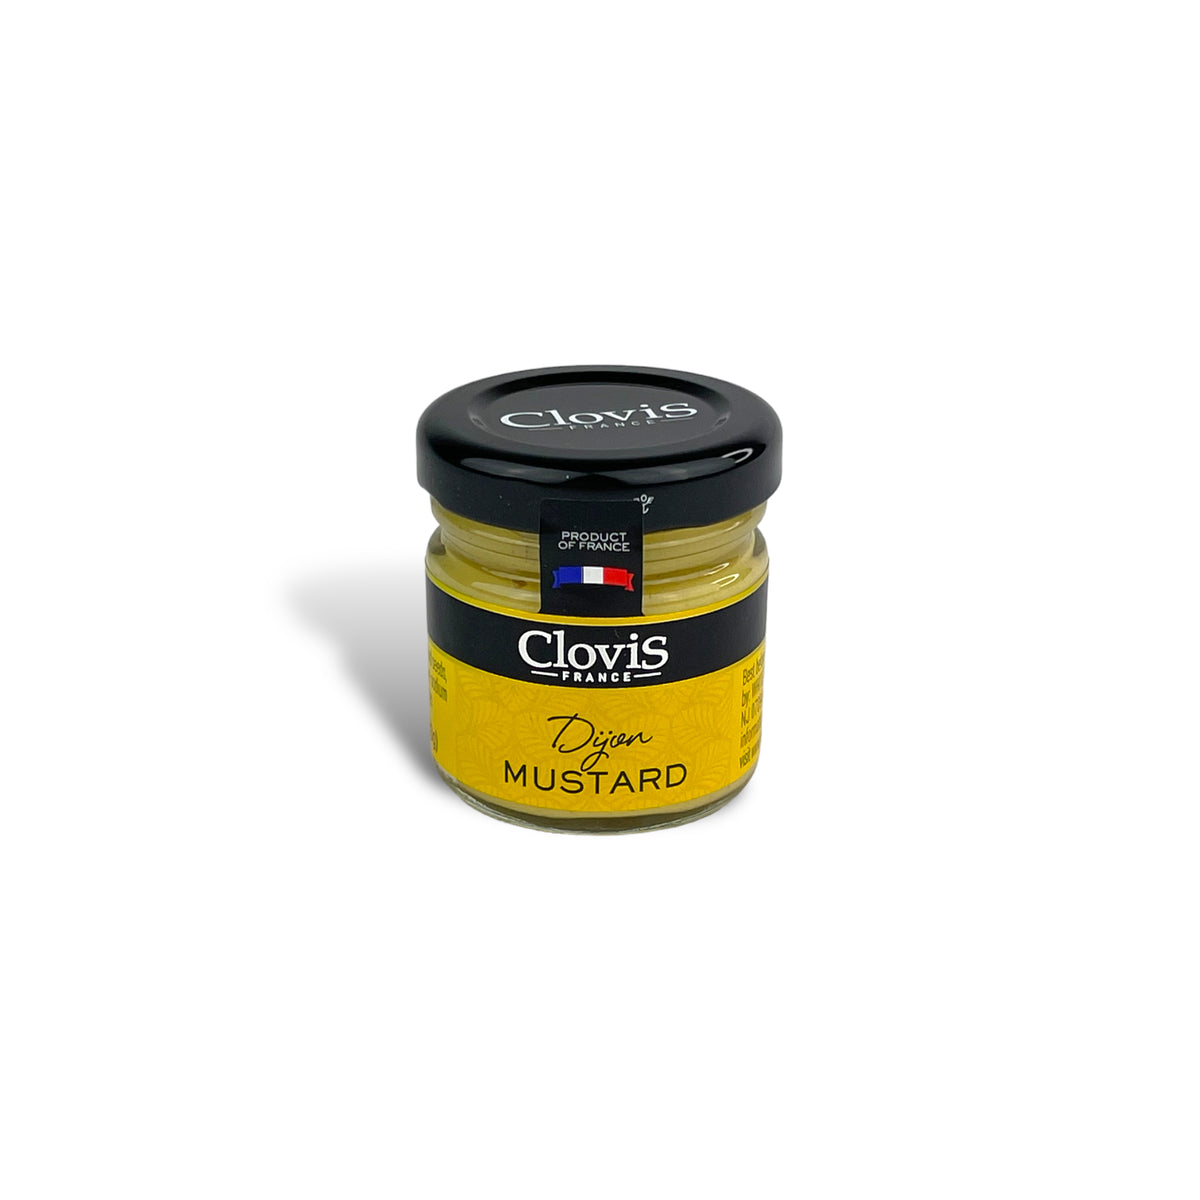 Dijon Mustard (33g)